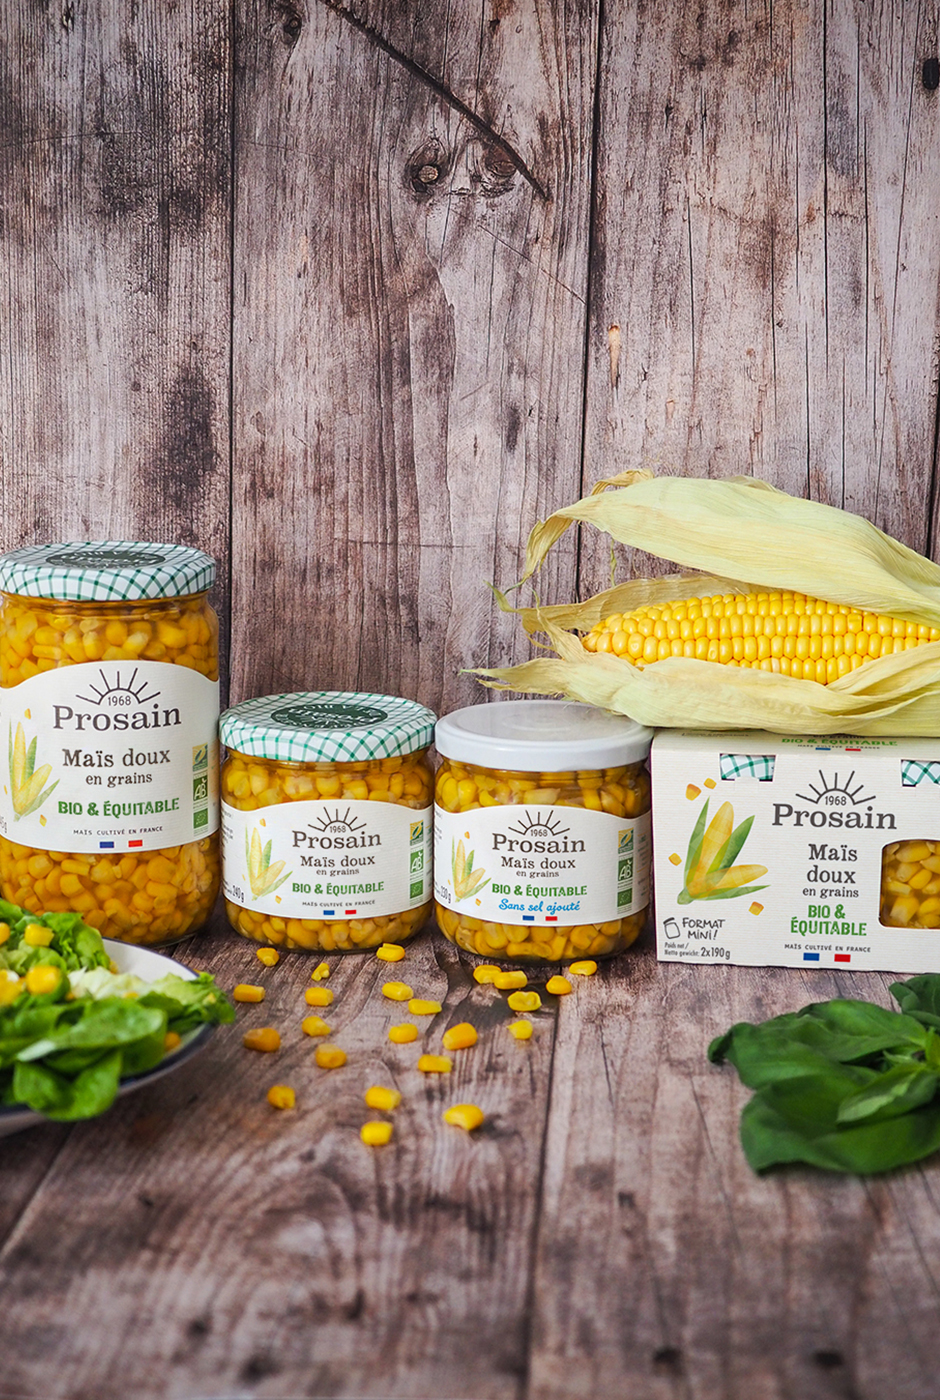 Prosain développe la filière de maïs bio et équitable en France